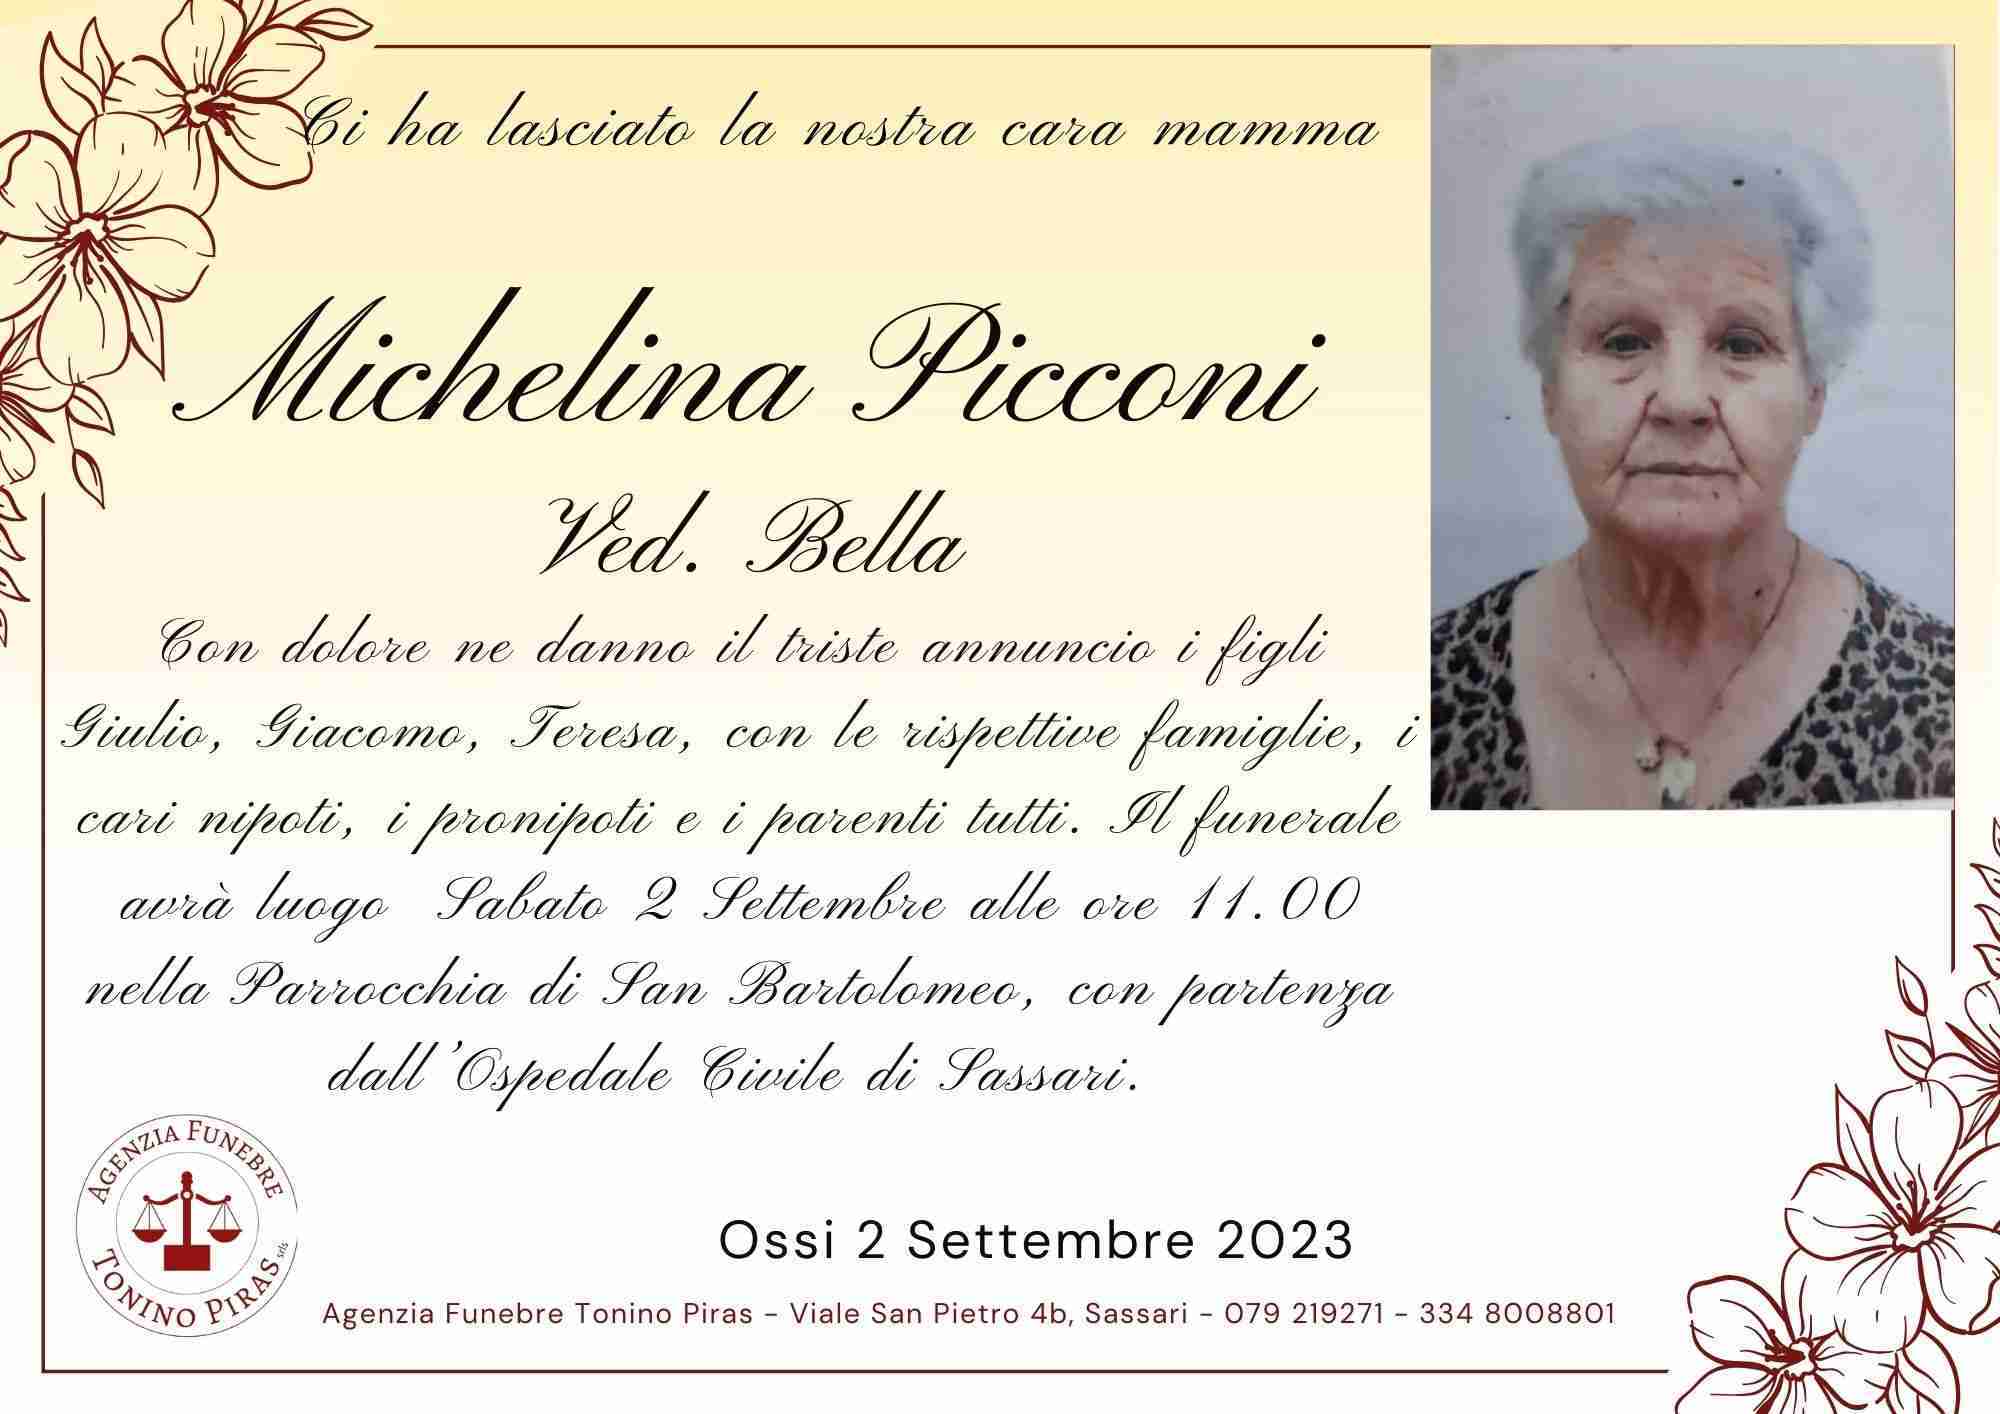 Michelina Picconi